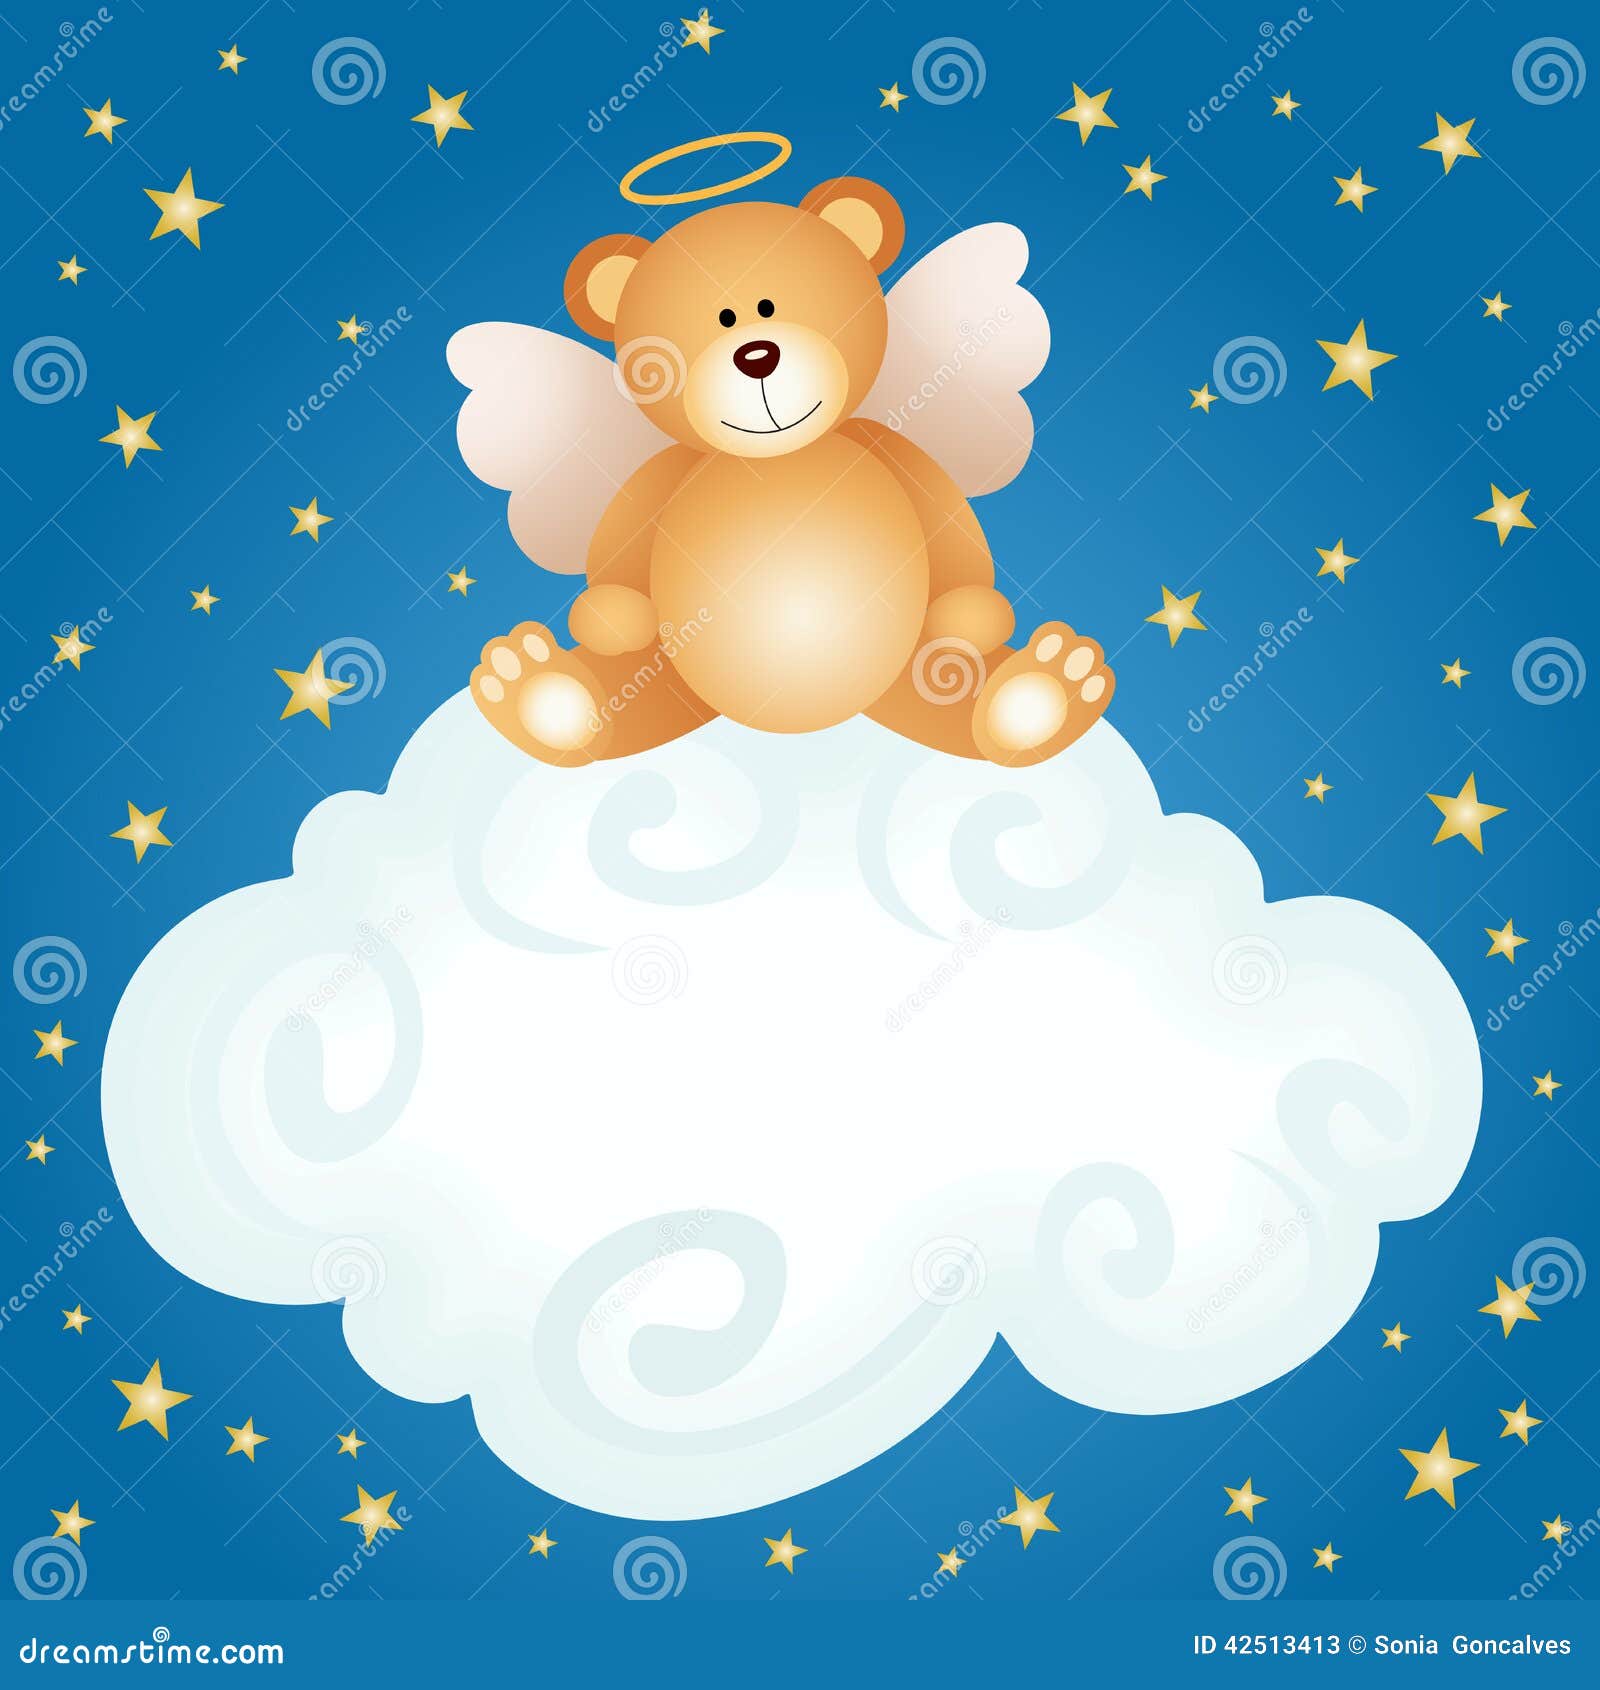 teddy bear angel clipart - photo #4